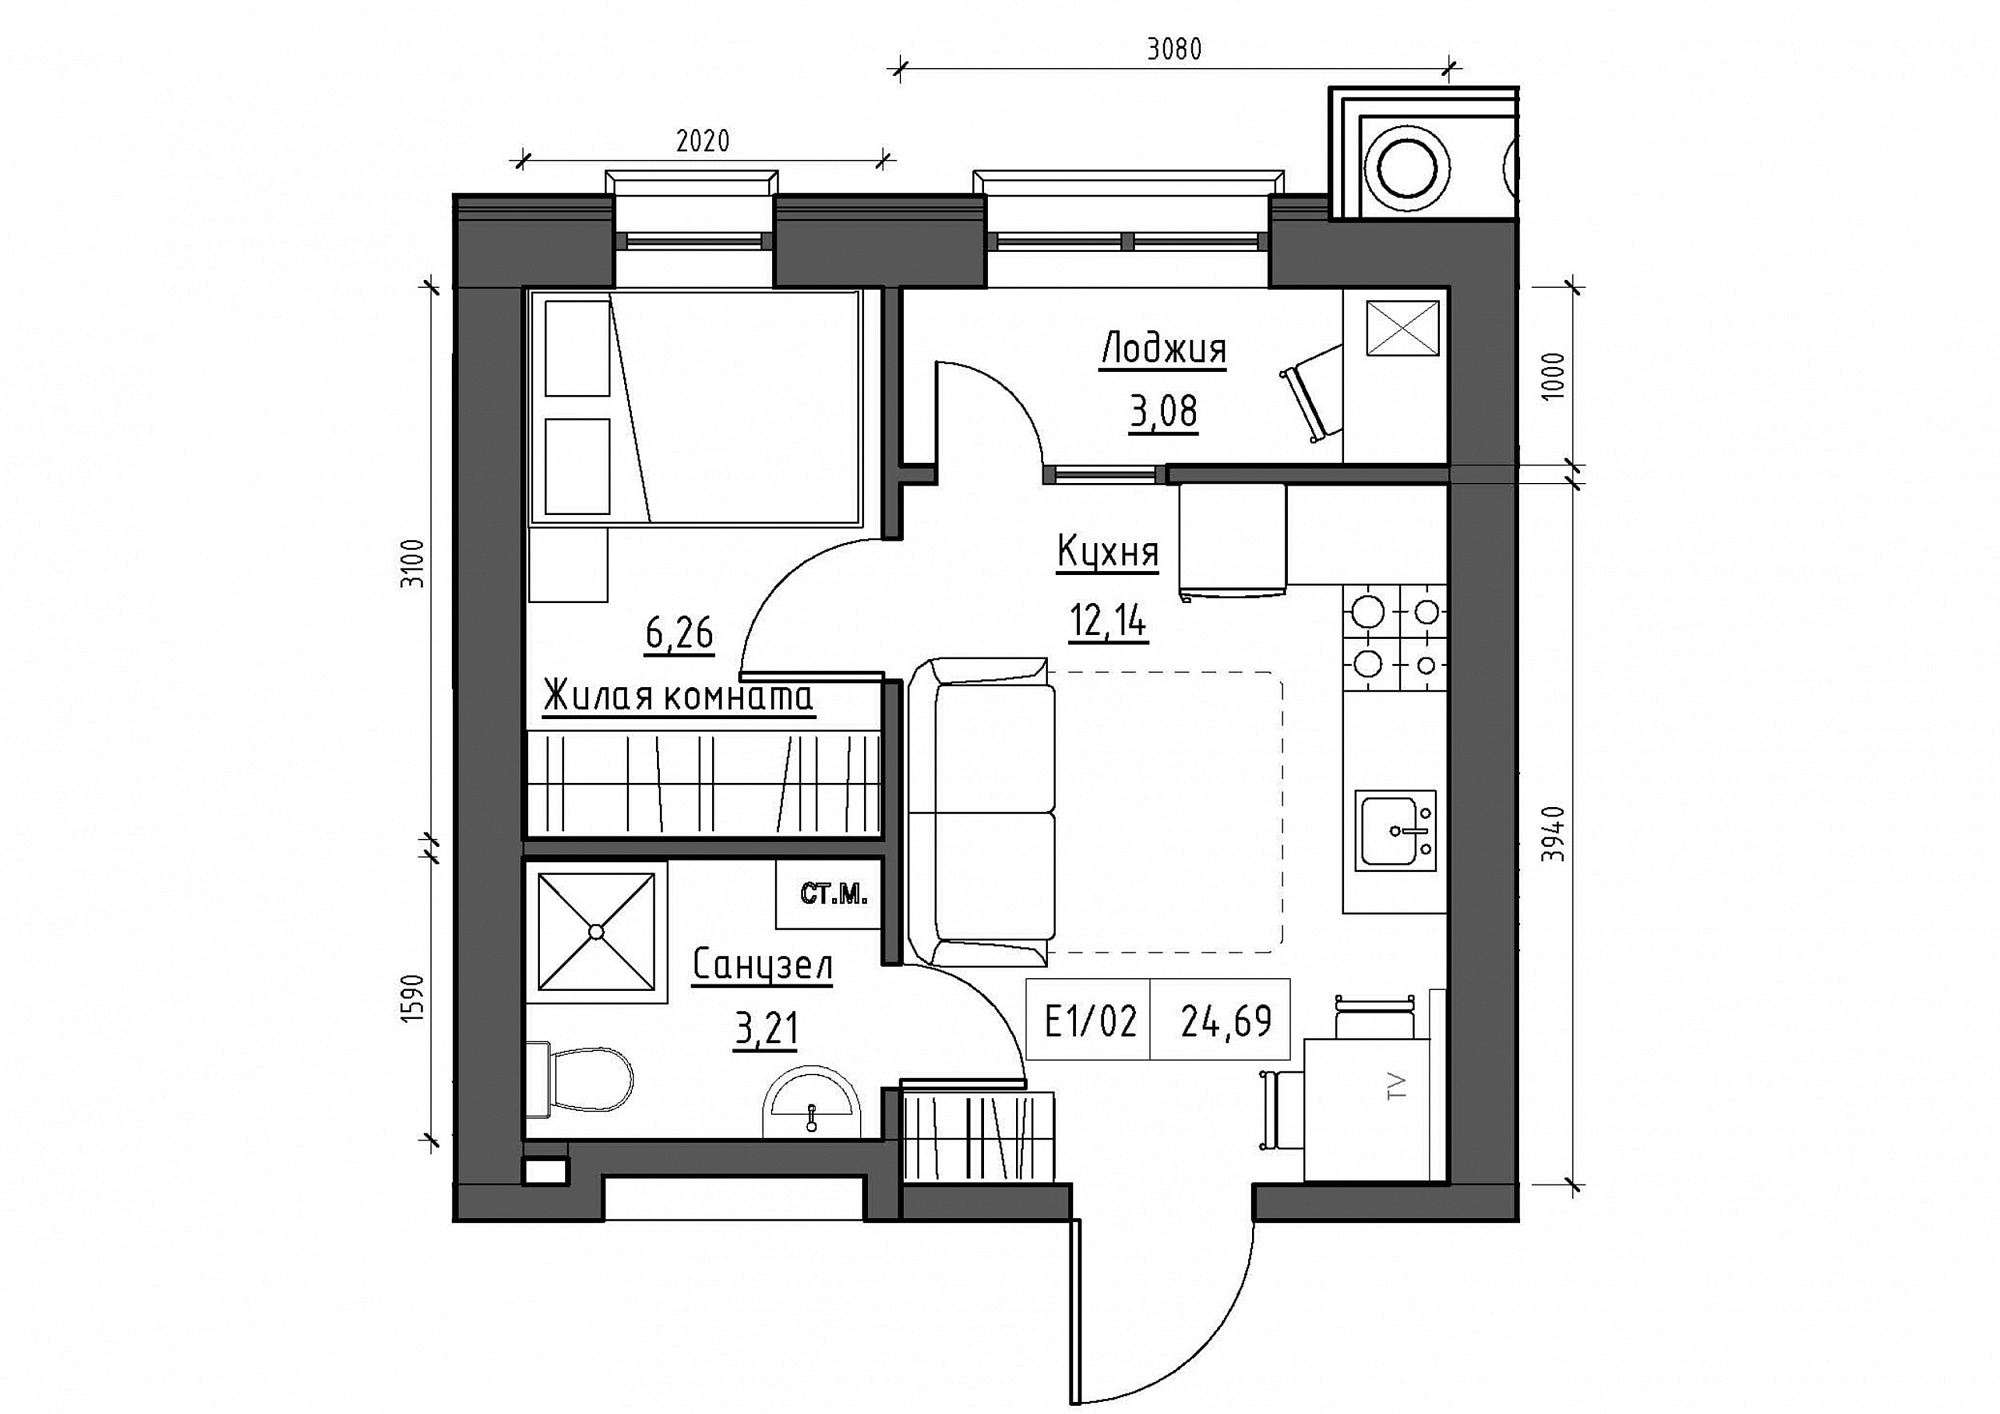 Планування 1-к квартира площею 24.69м2, KS-011-02/0014.